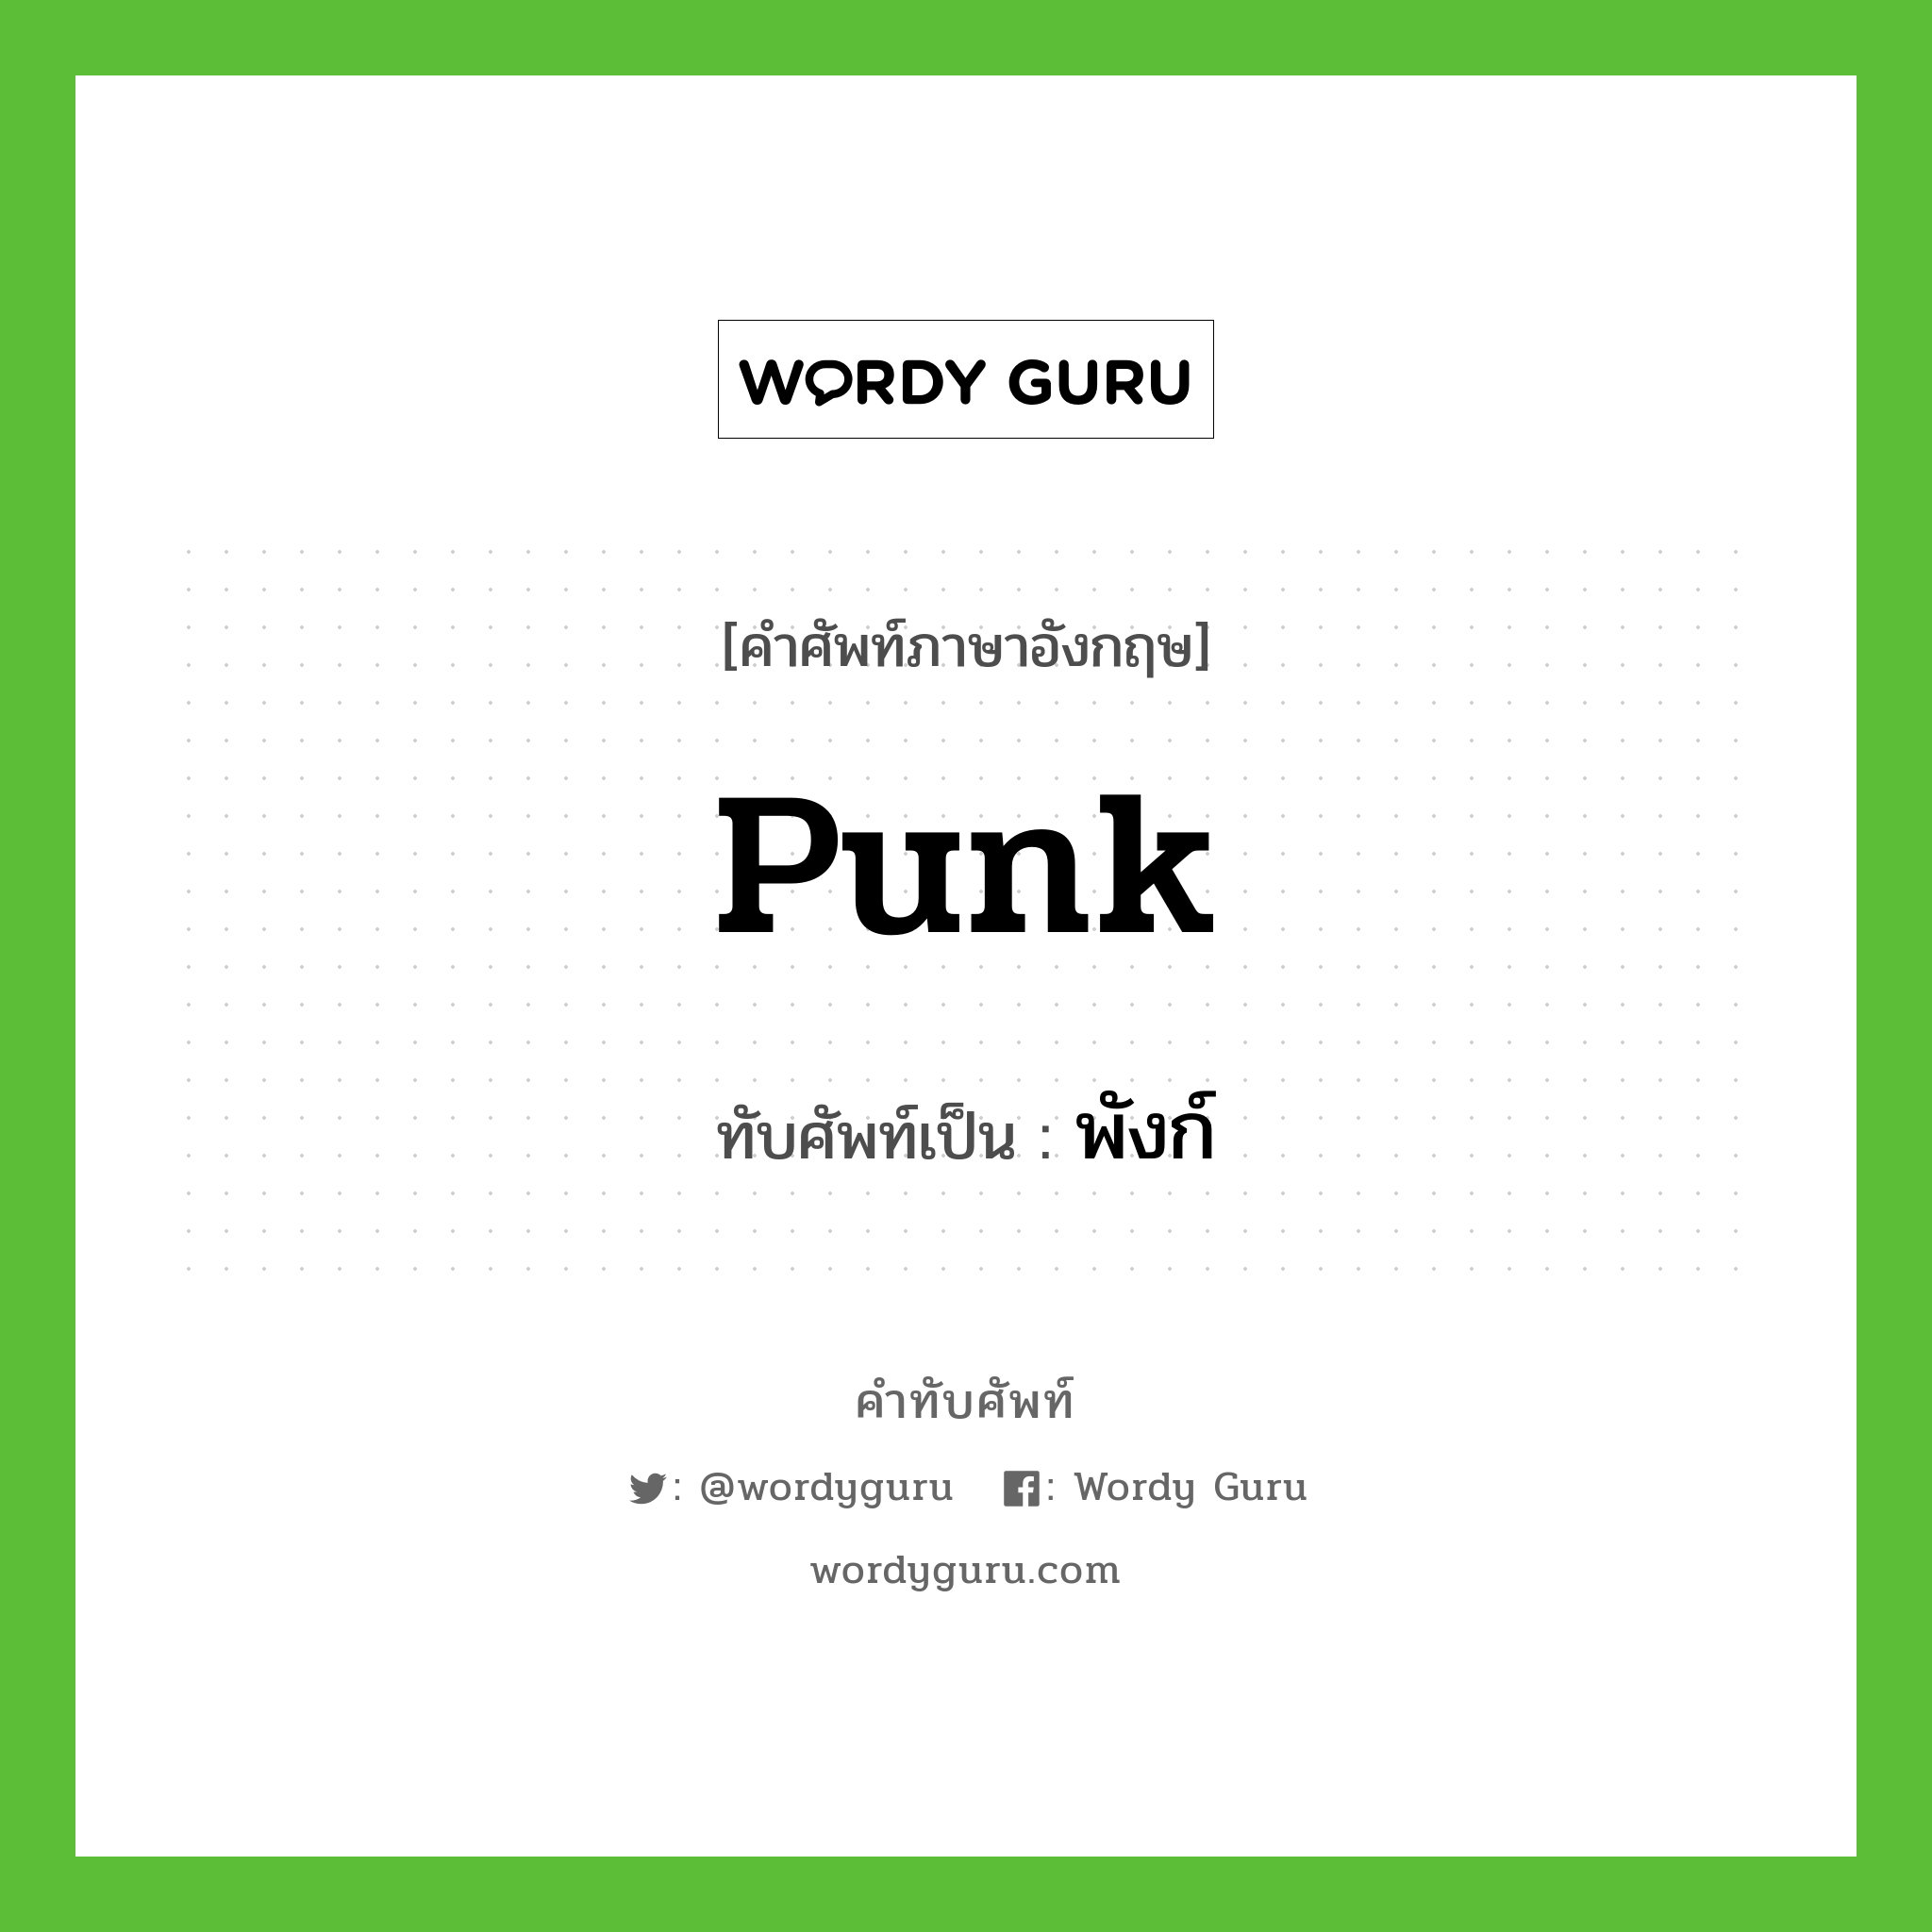 punk เขียนเป็นคำไทยว่าอะไร?, คำศัพท์ภาษาอังกฤษ punk ทับศัพท์เป็น พังก์